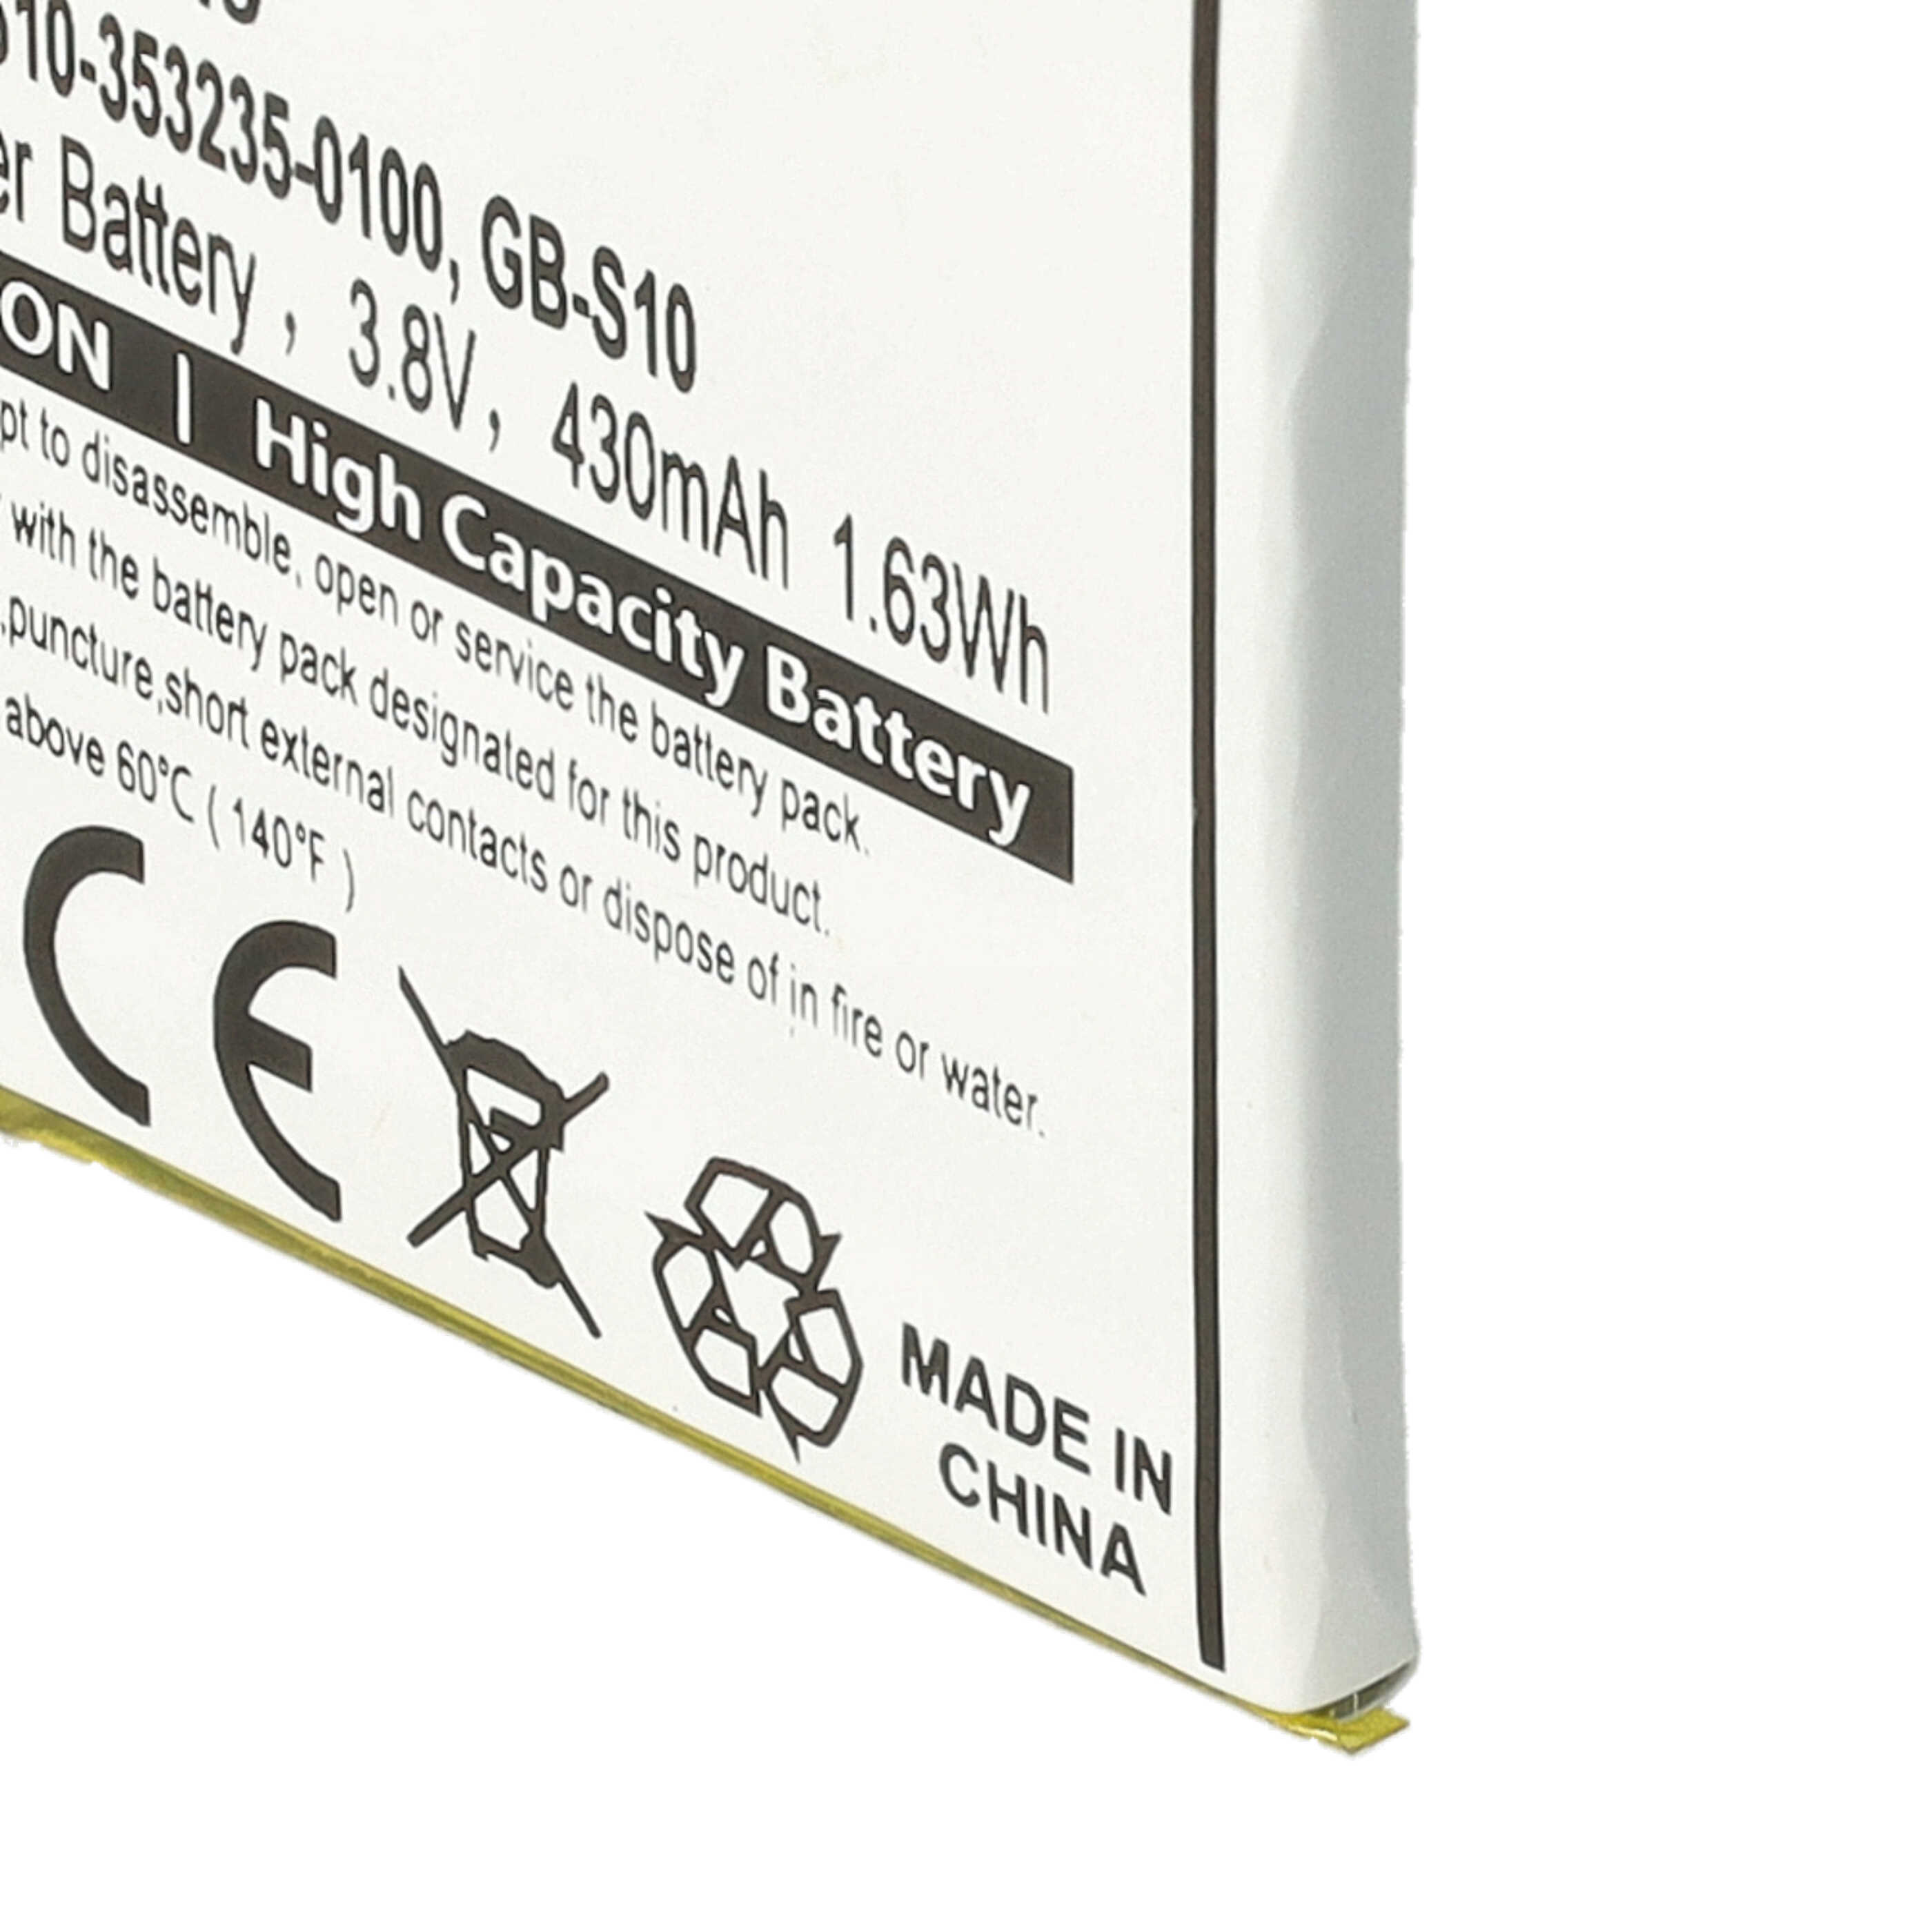 Batterie remplace Sony 1288-9079, GB-S10, 1588-0911 pour montre connectée - 430mAh 3,7V Li-polymère + outils